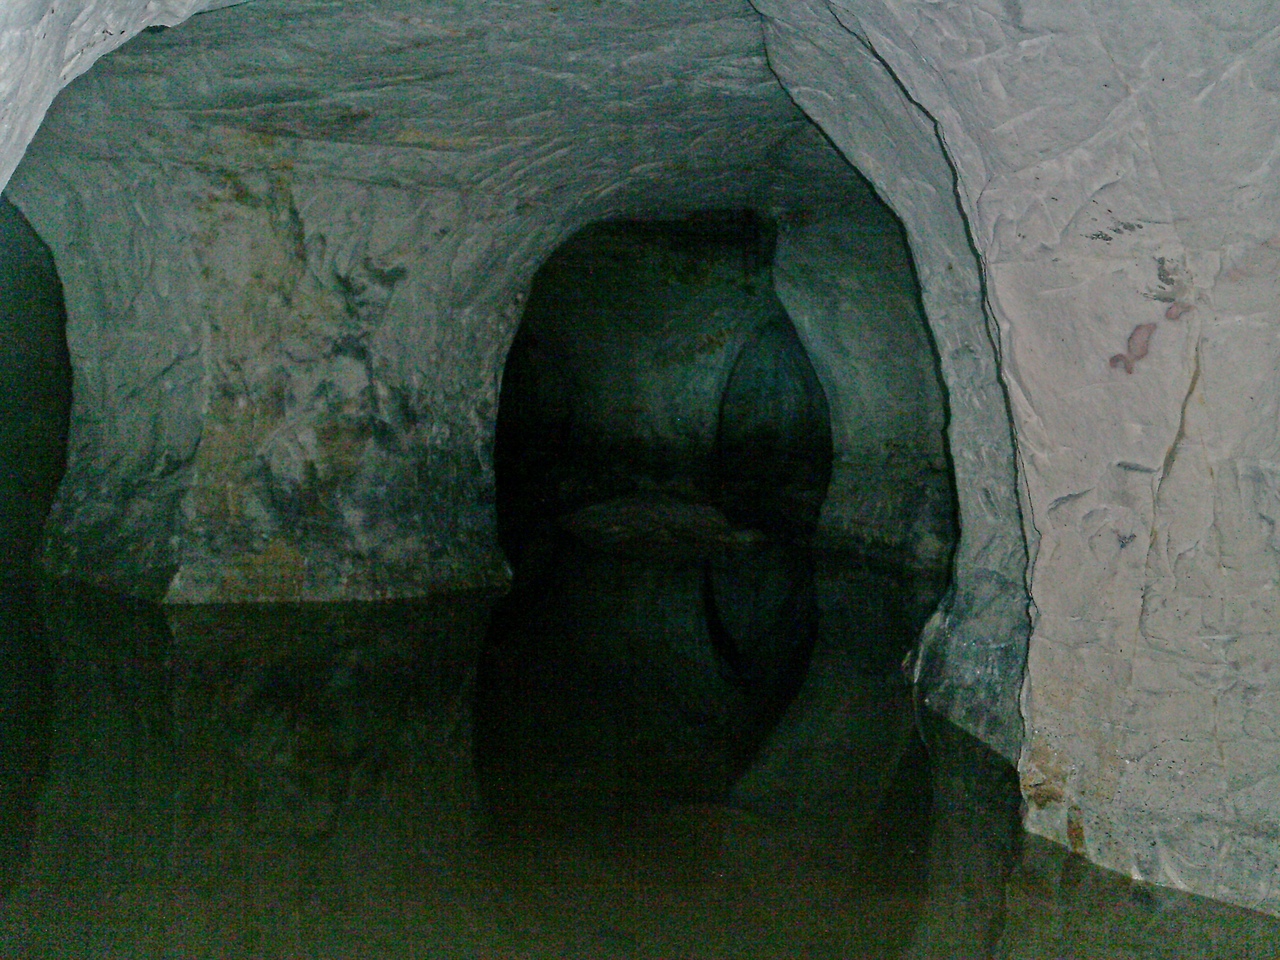 Староладожская пещера (Старая Ладога)